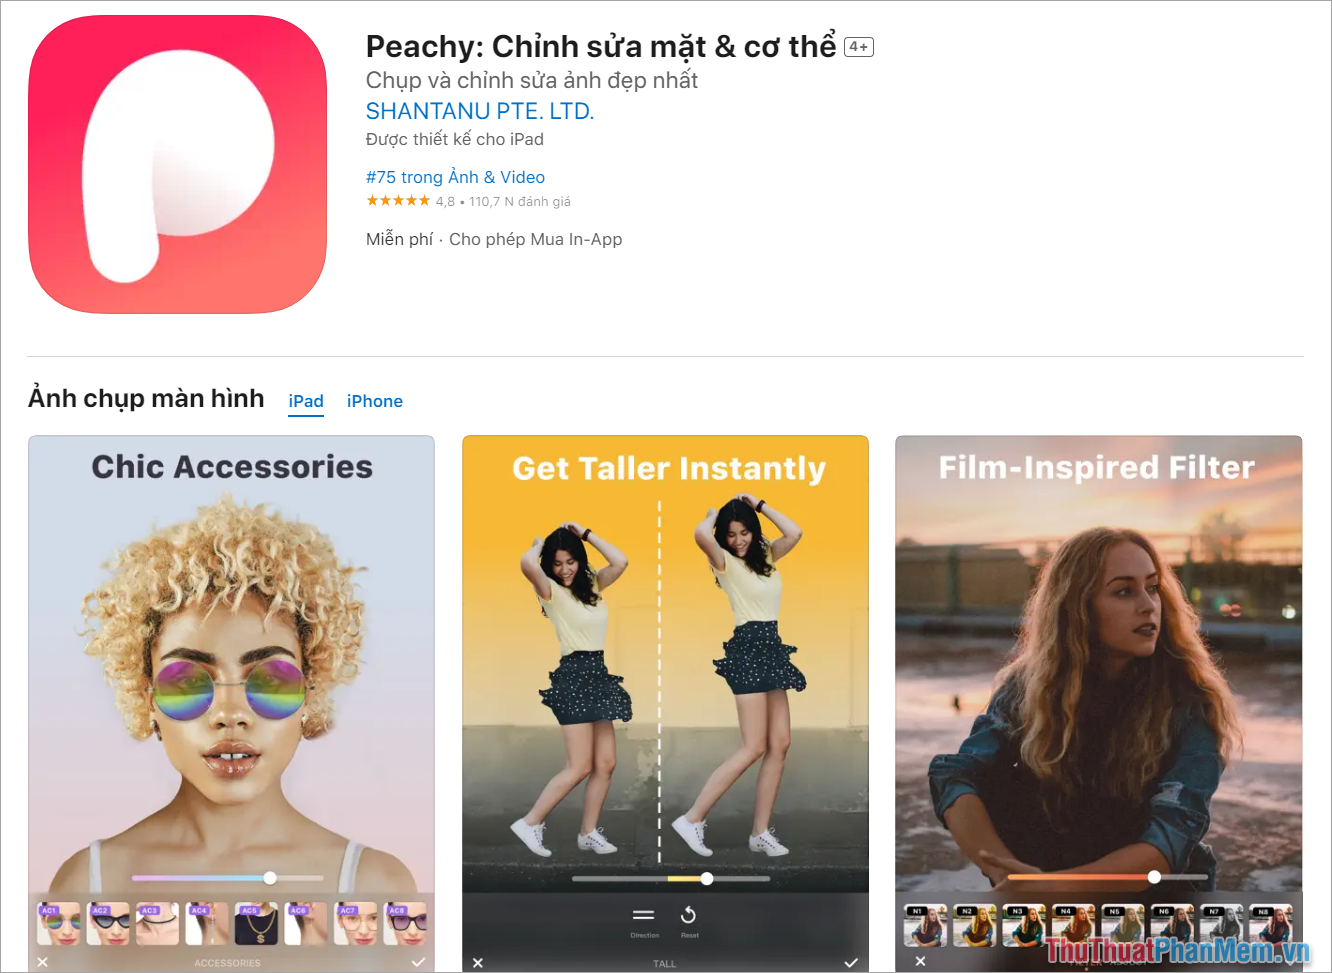 Peachy – App kéo dài chân chuyên nghiệp